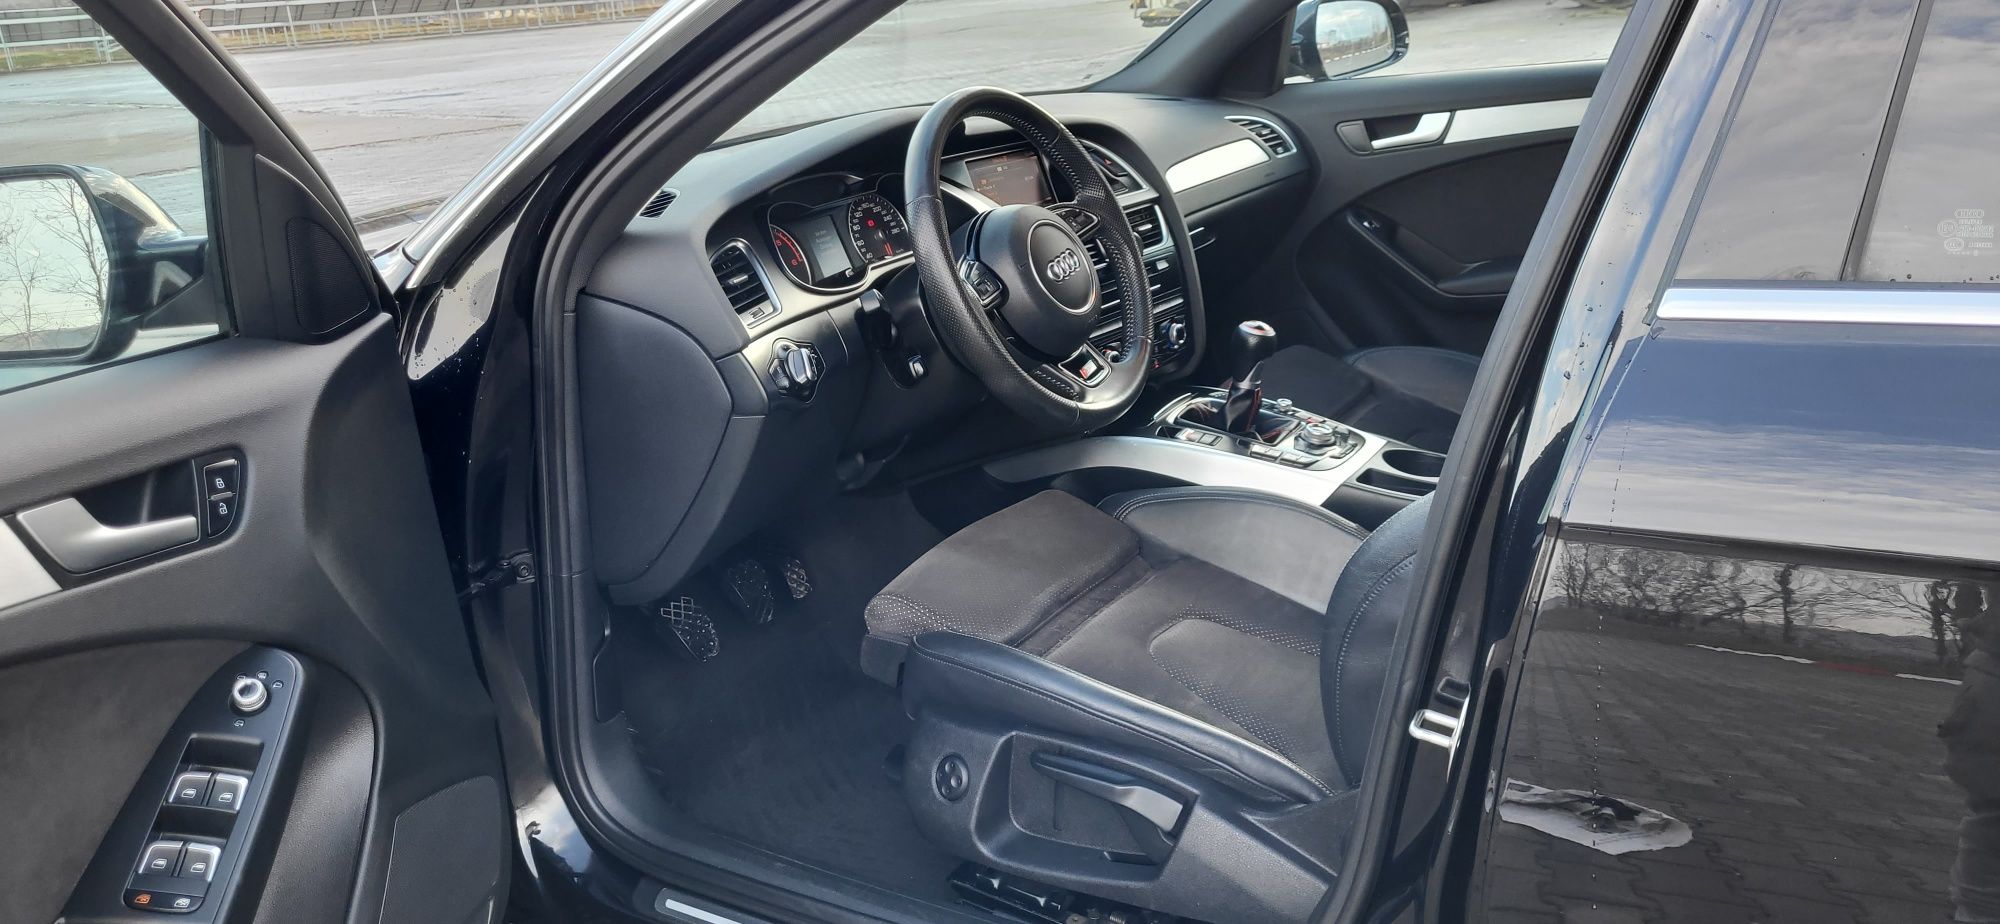 Audi a4 2.0 tdi 2015 euro 5 3 x sline